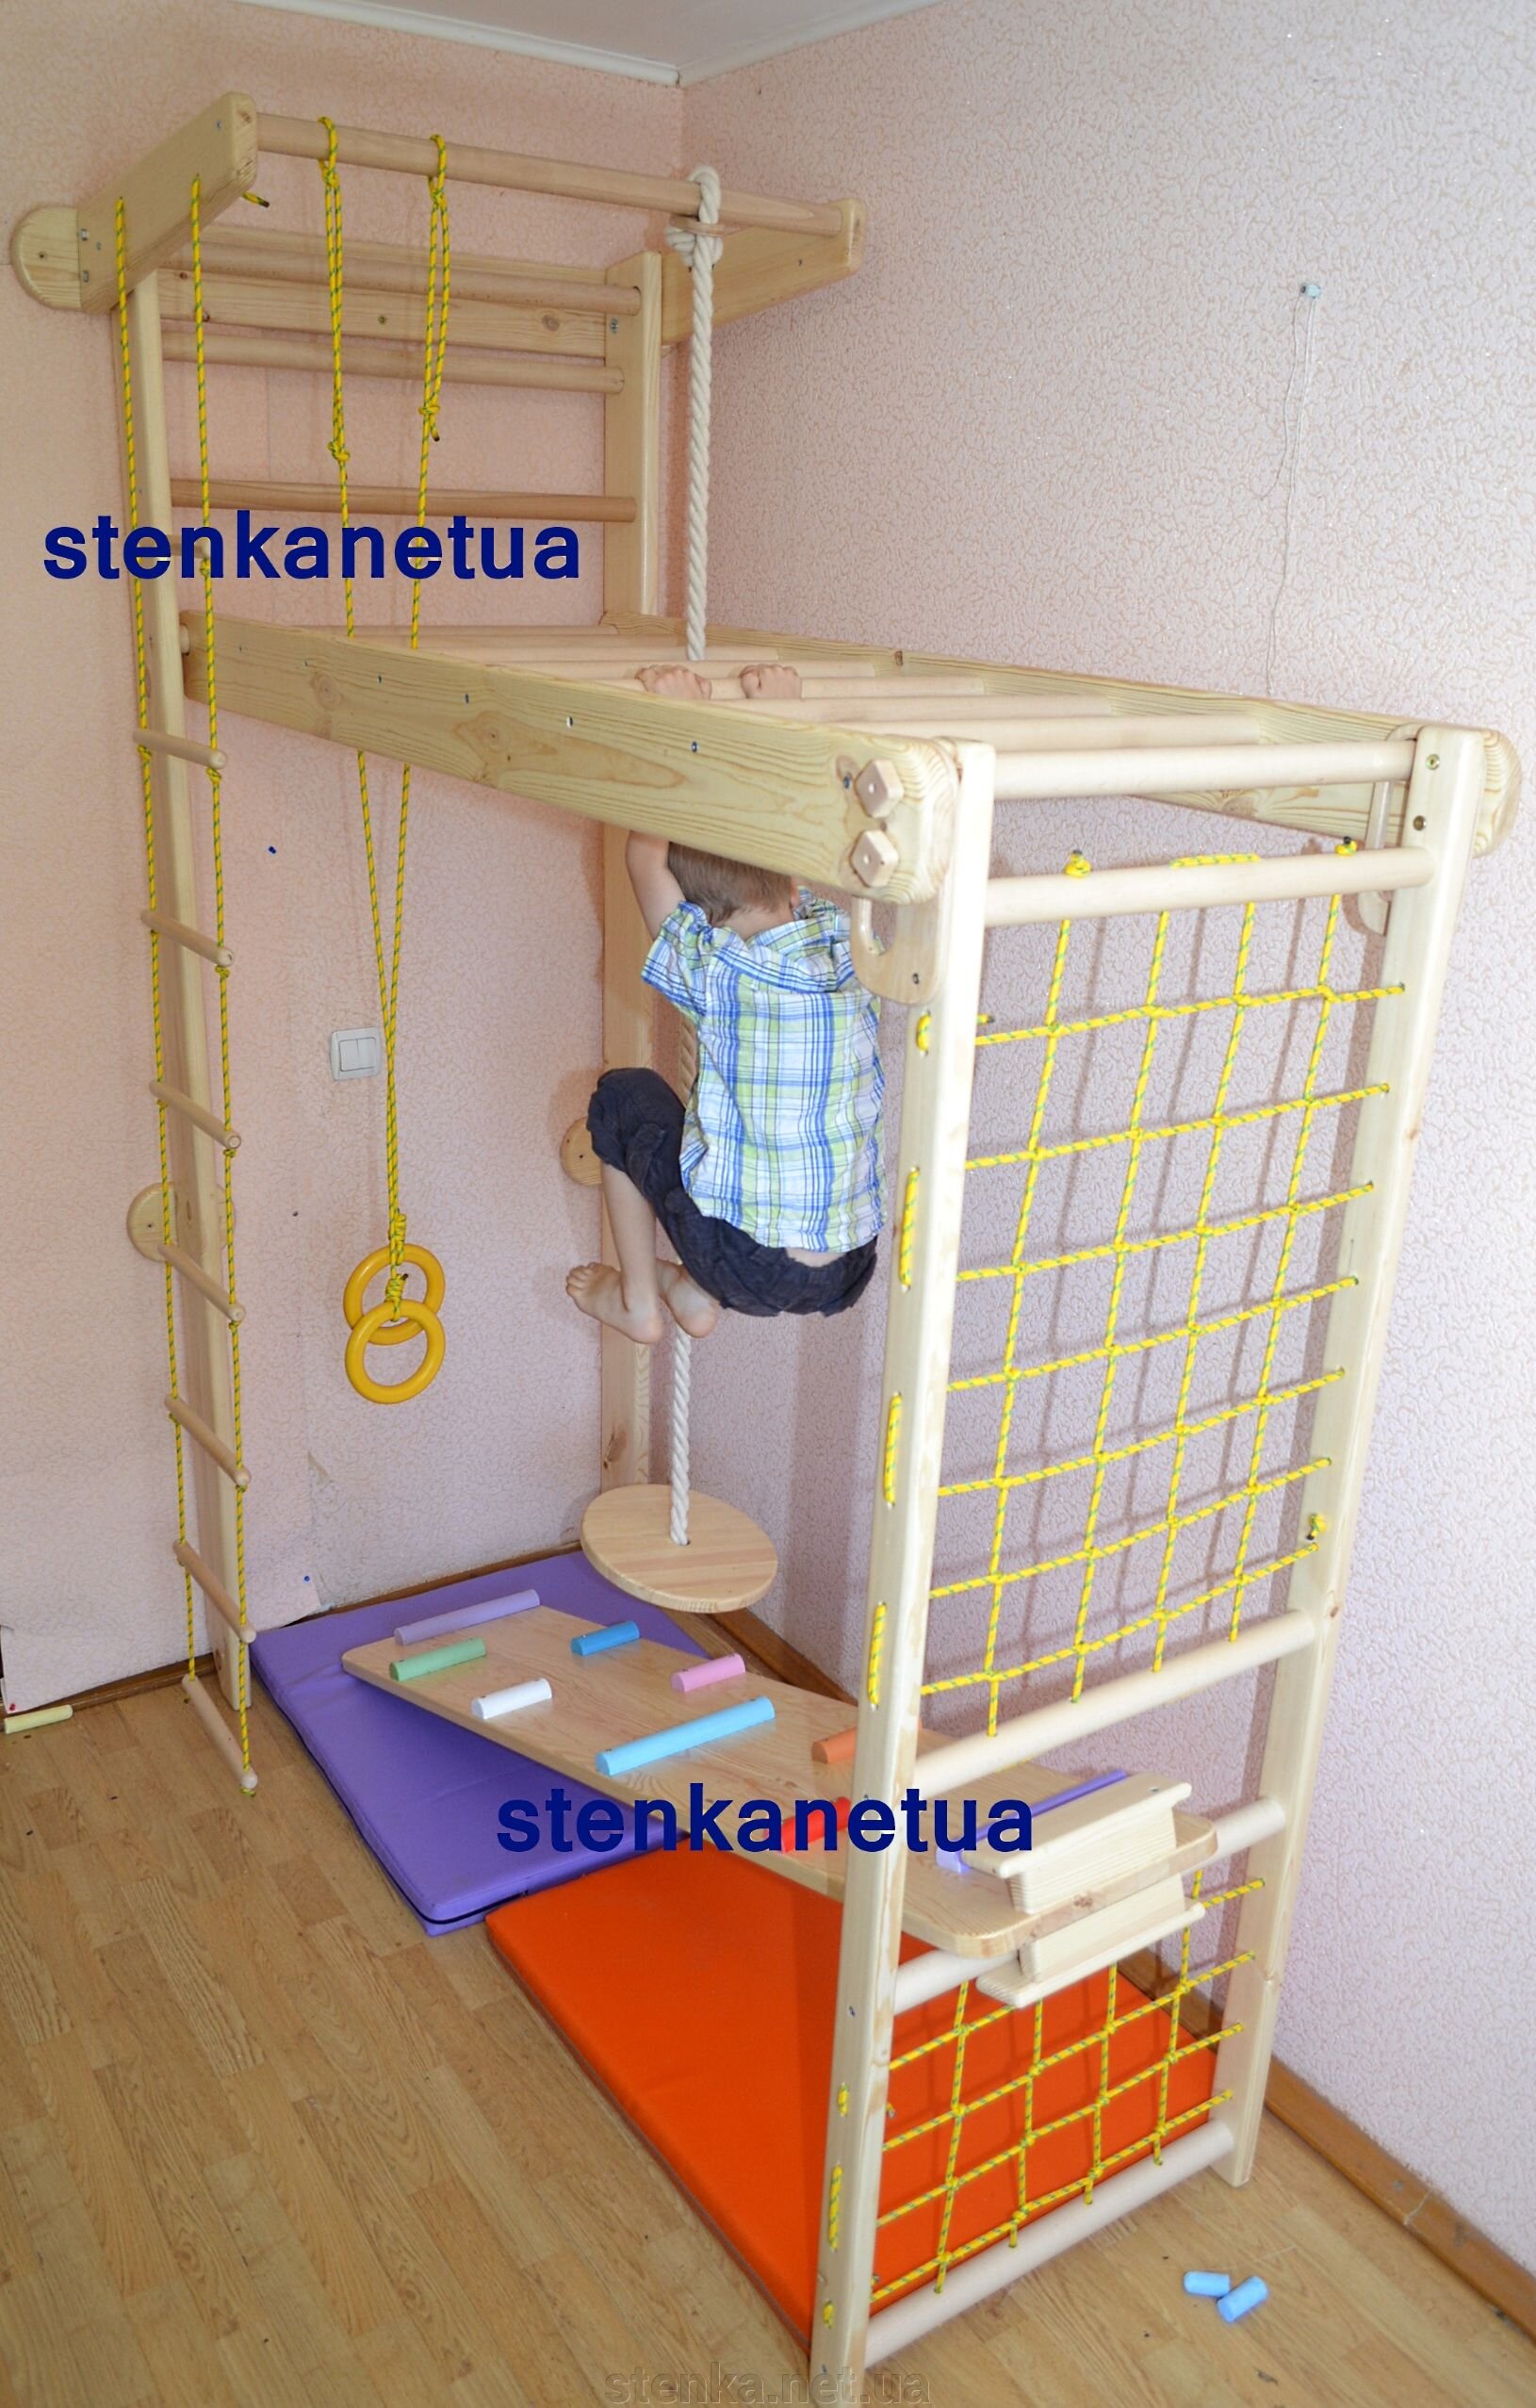 Детская шведская стенка трансформер  - пространство для развития. - фото pic_8fac1ad53e49a59_1920x9000_1.jpg